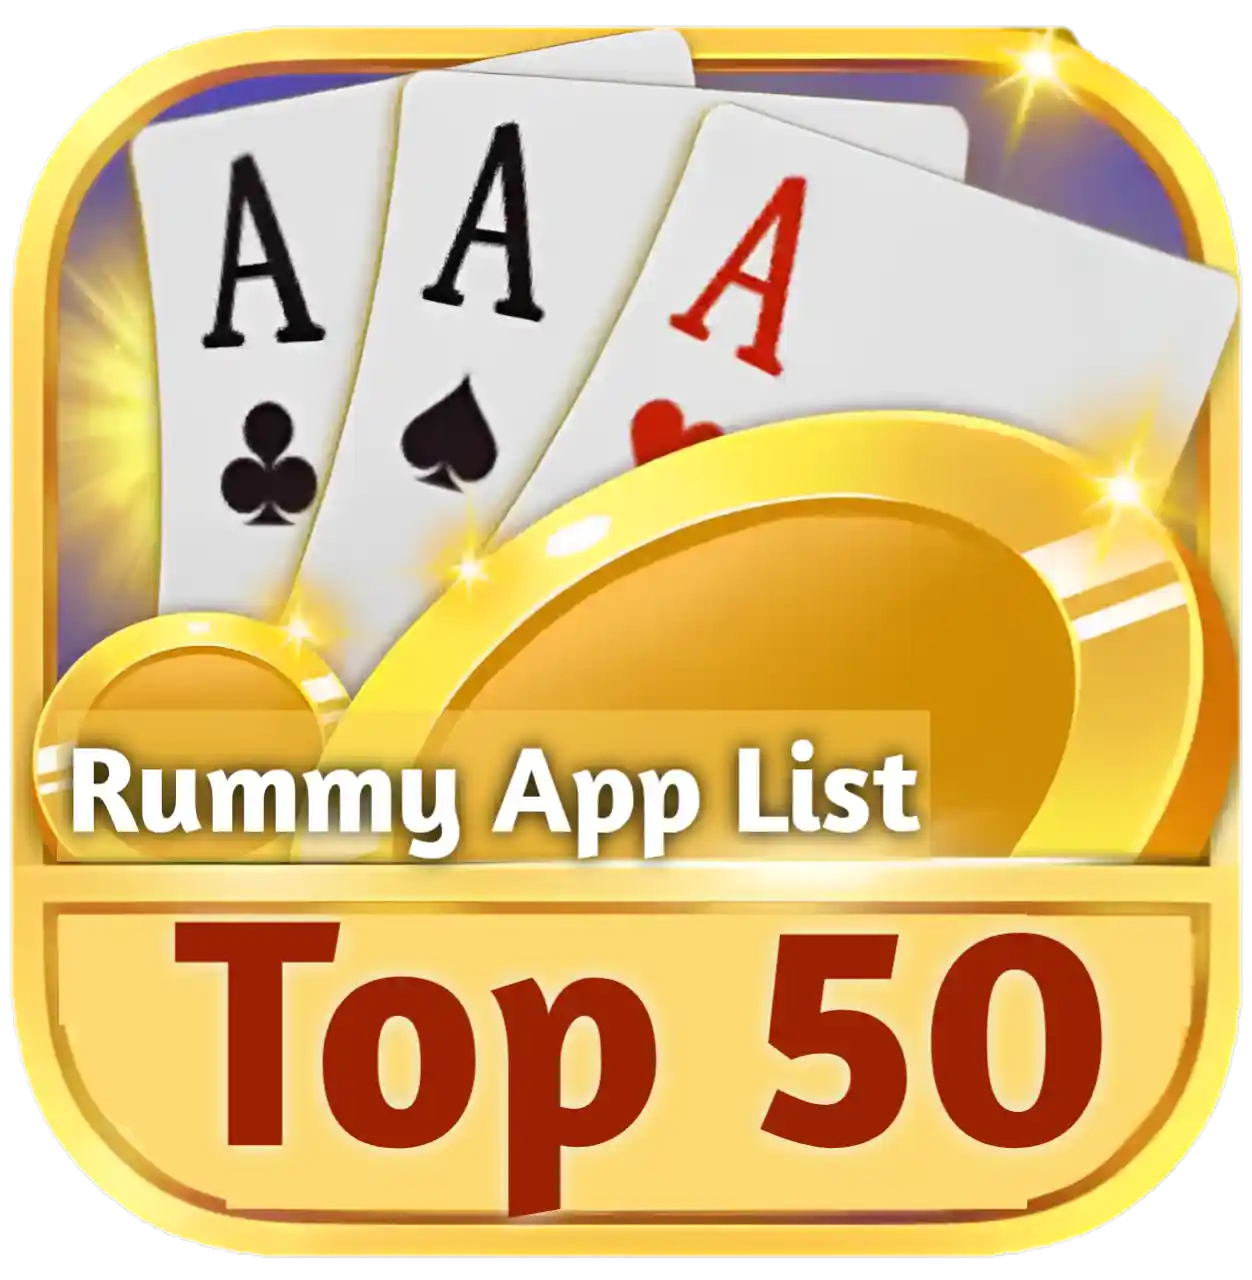 Top 50 Rummy Apk List - India Rummy App List (India Rummy App)